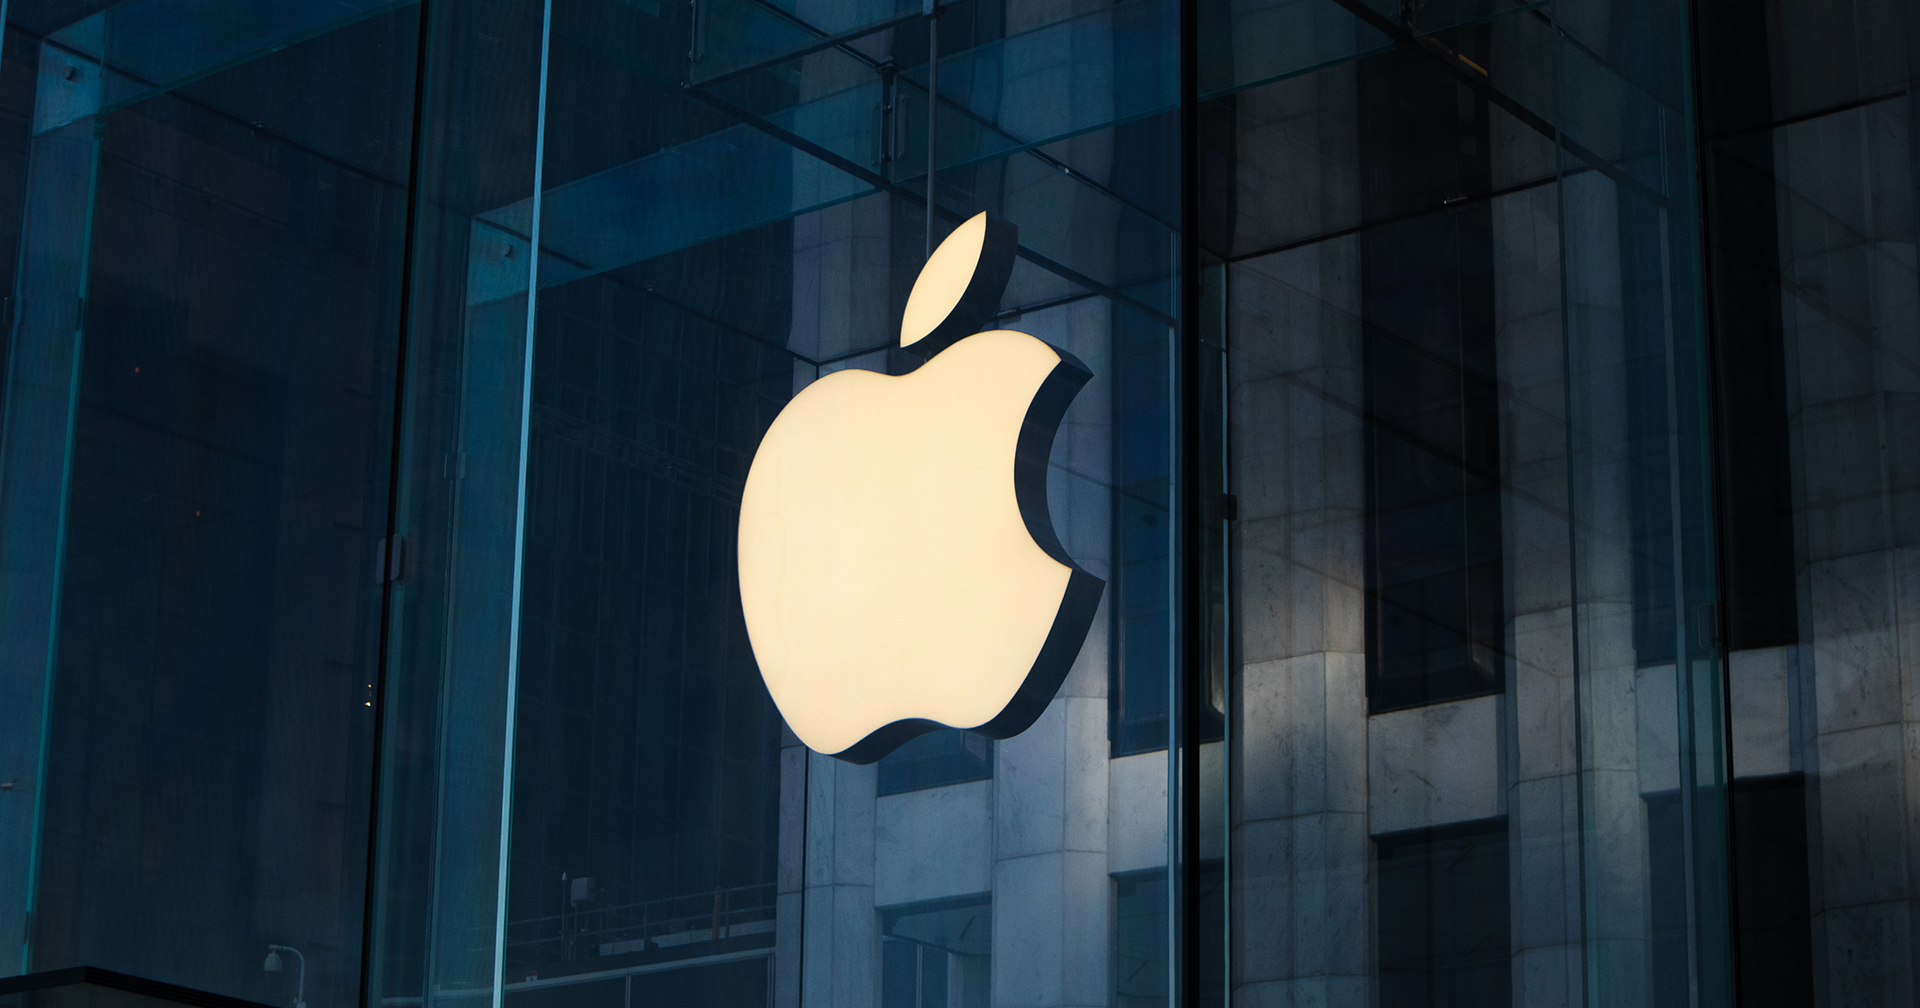 สื่อรายงาน Apple ระงับการจ้างงานใหม่เกือบทุกแผนก ควบคุมต้นทุน